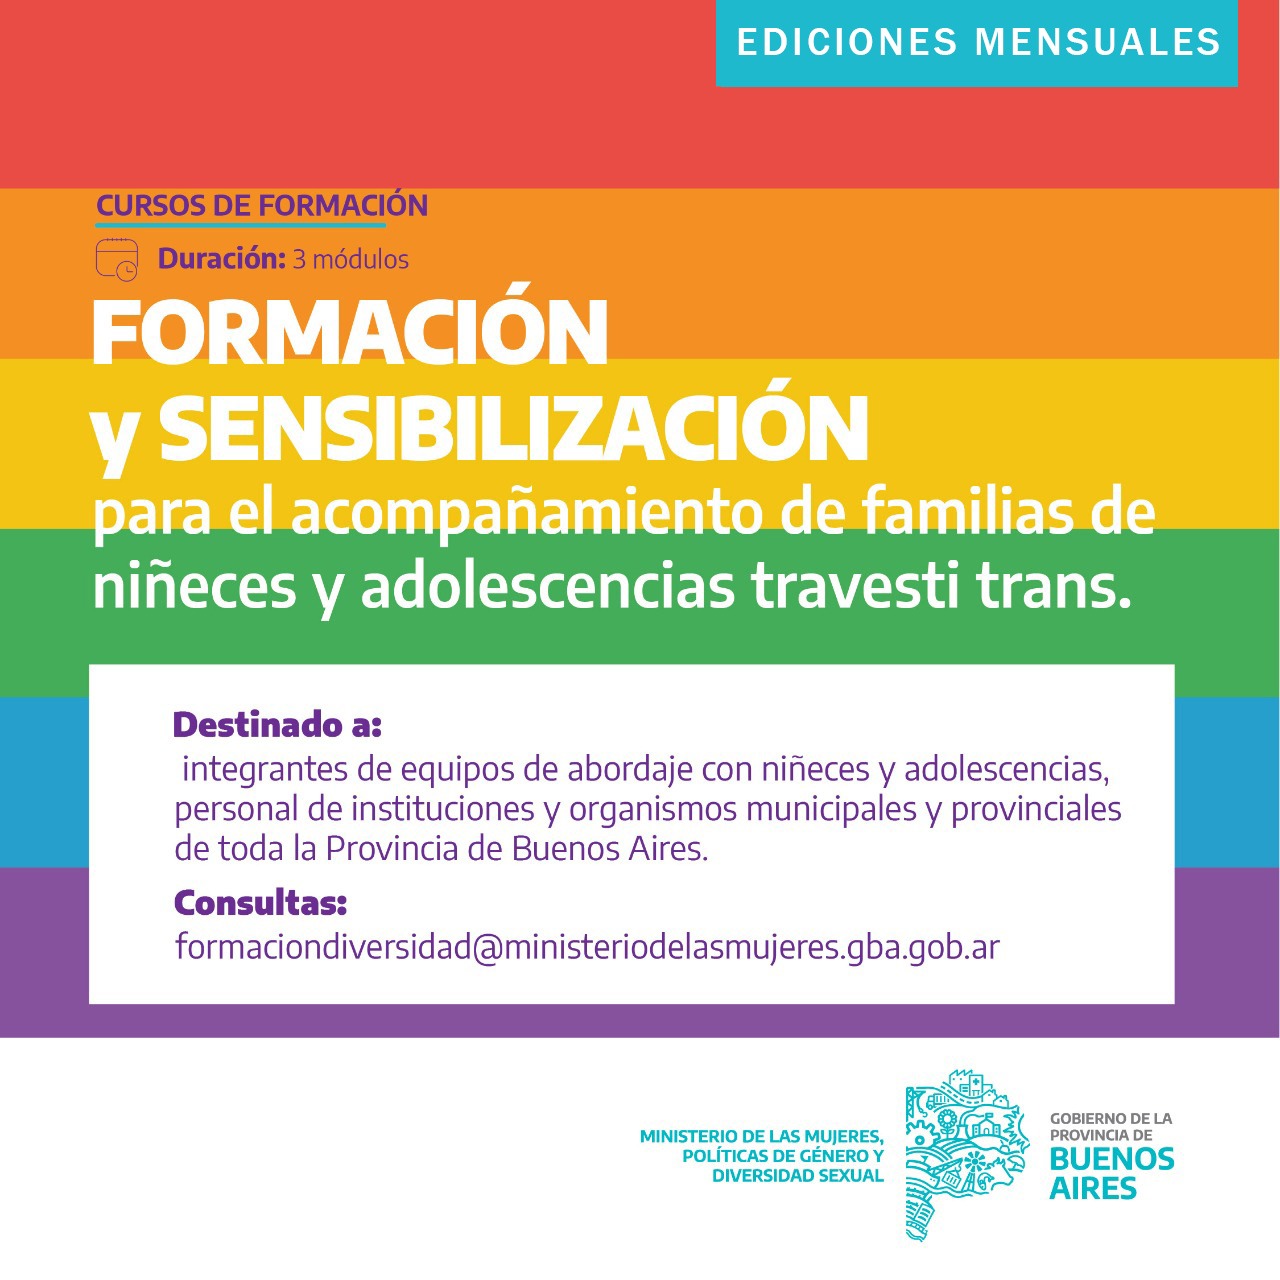 Formación y sensibilización para el acompañamiento de familias de niñeces y adolescencias travesti trans